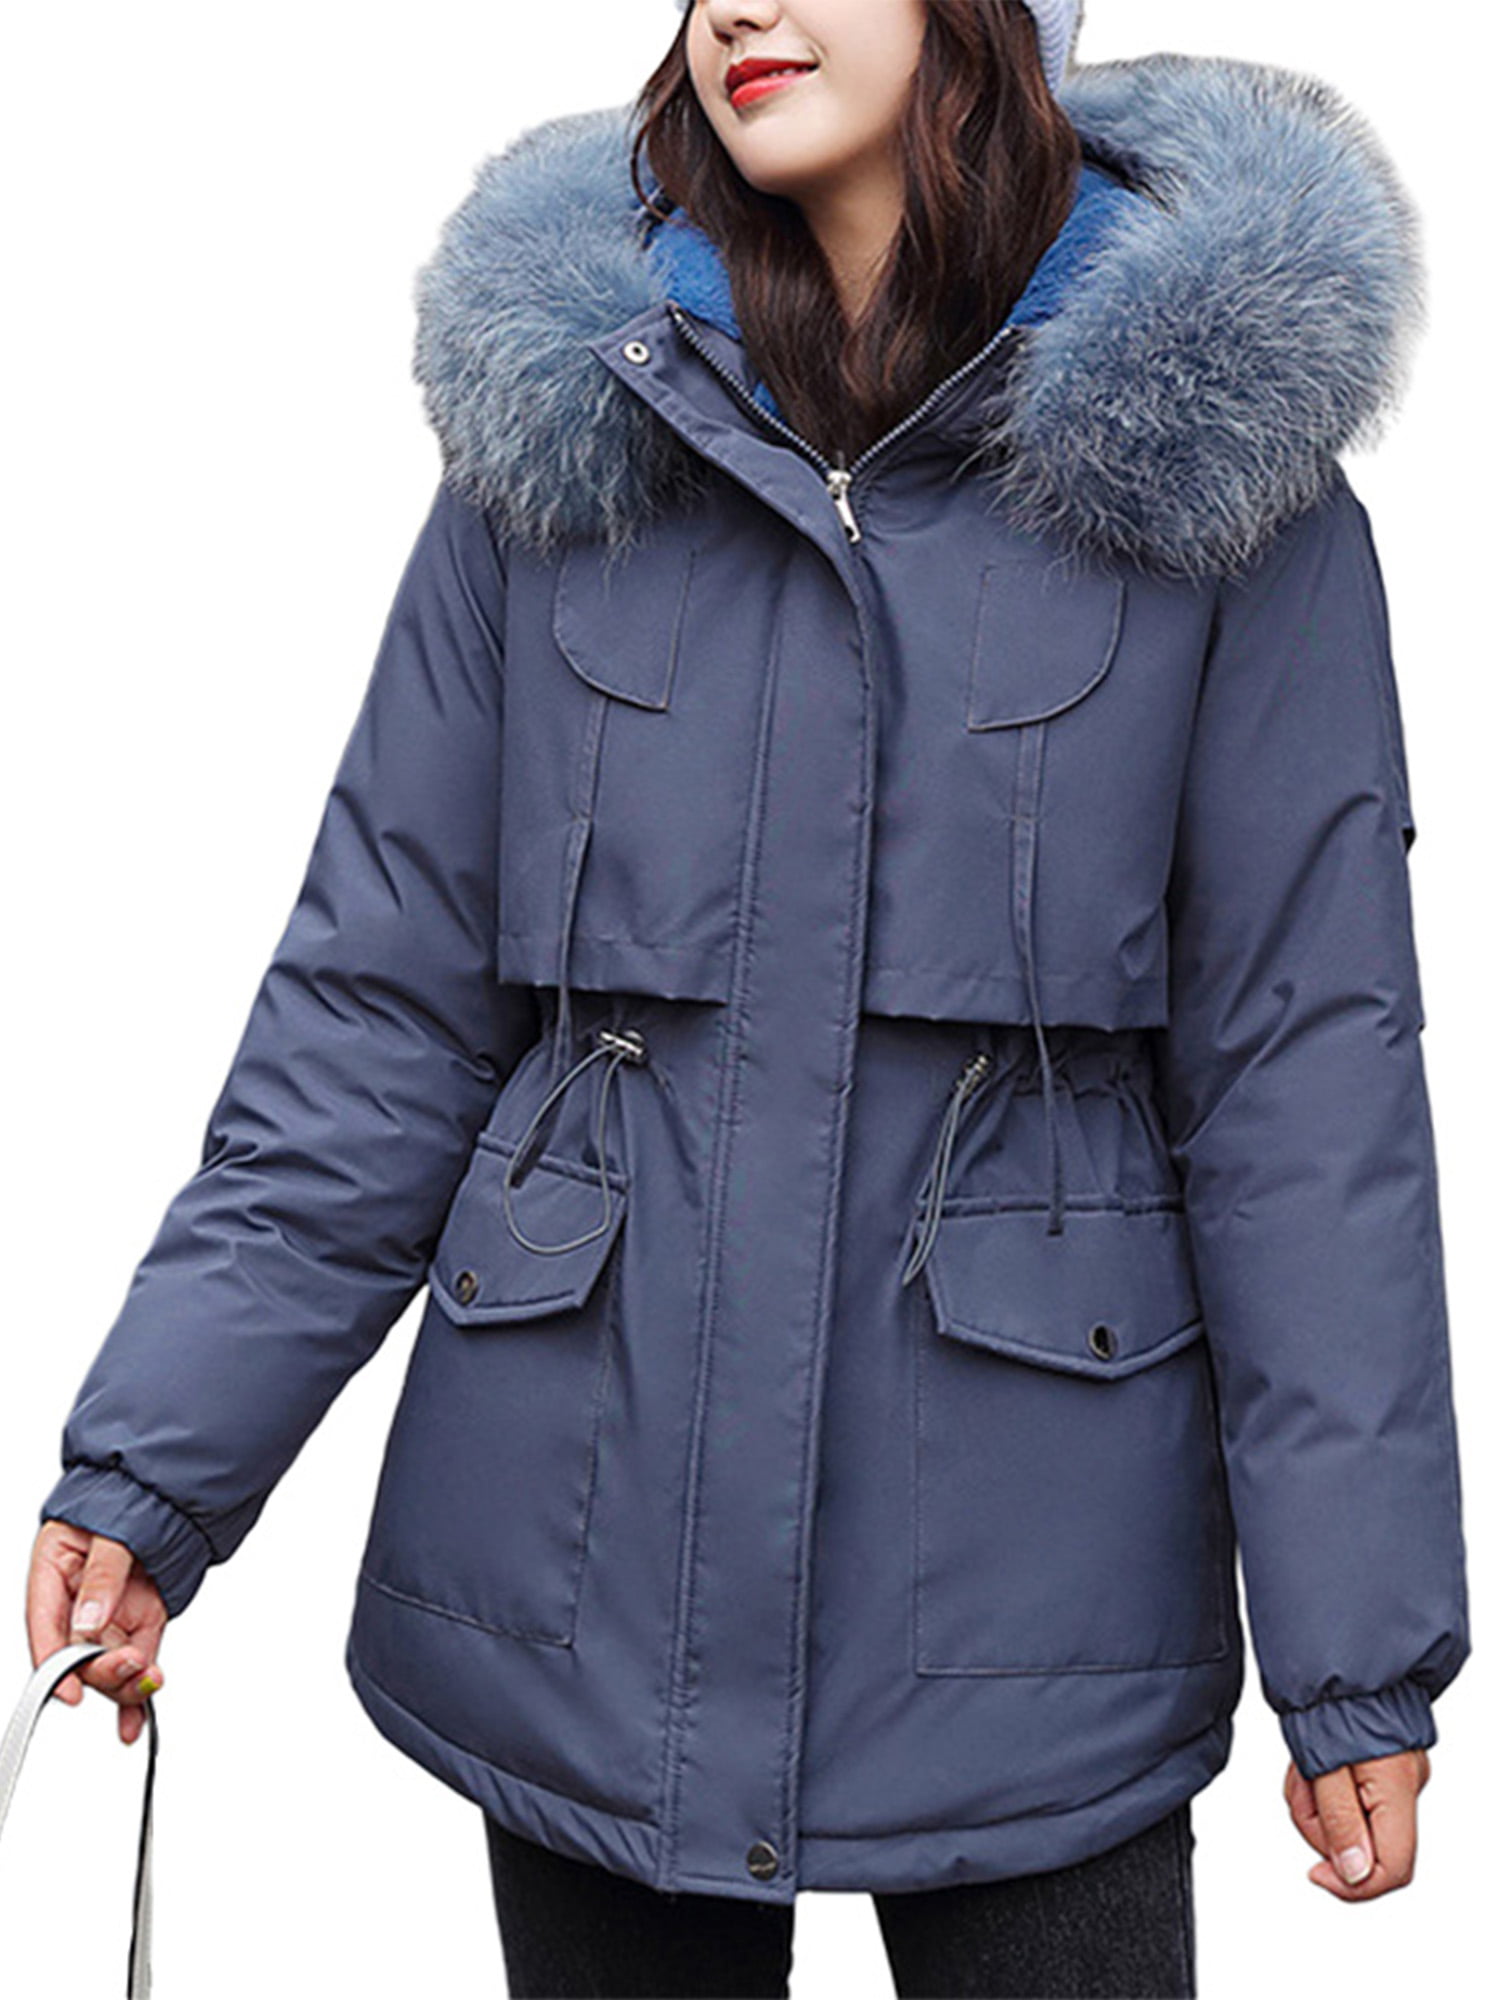 Womens Casual Long Coats Parka Ladies Winter Warm Faux Fur Fleece Jacket Outwear